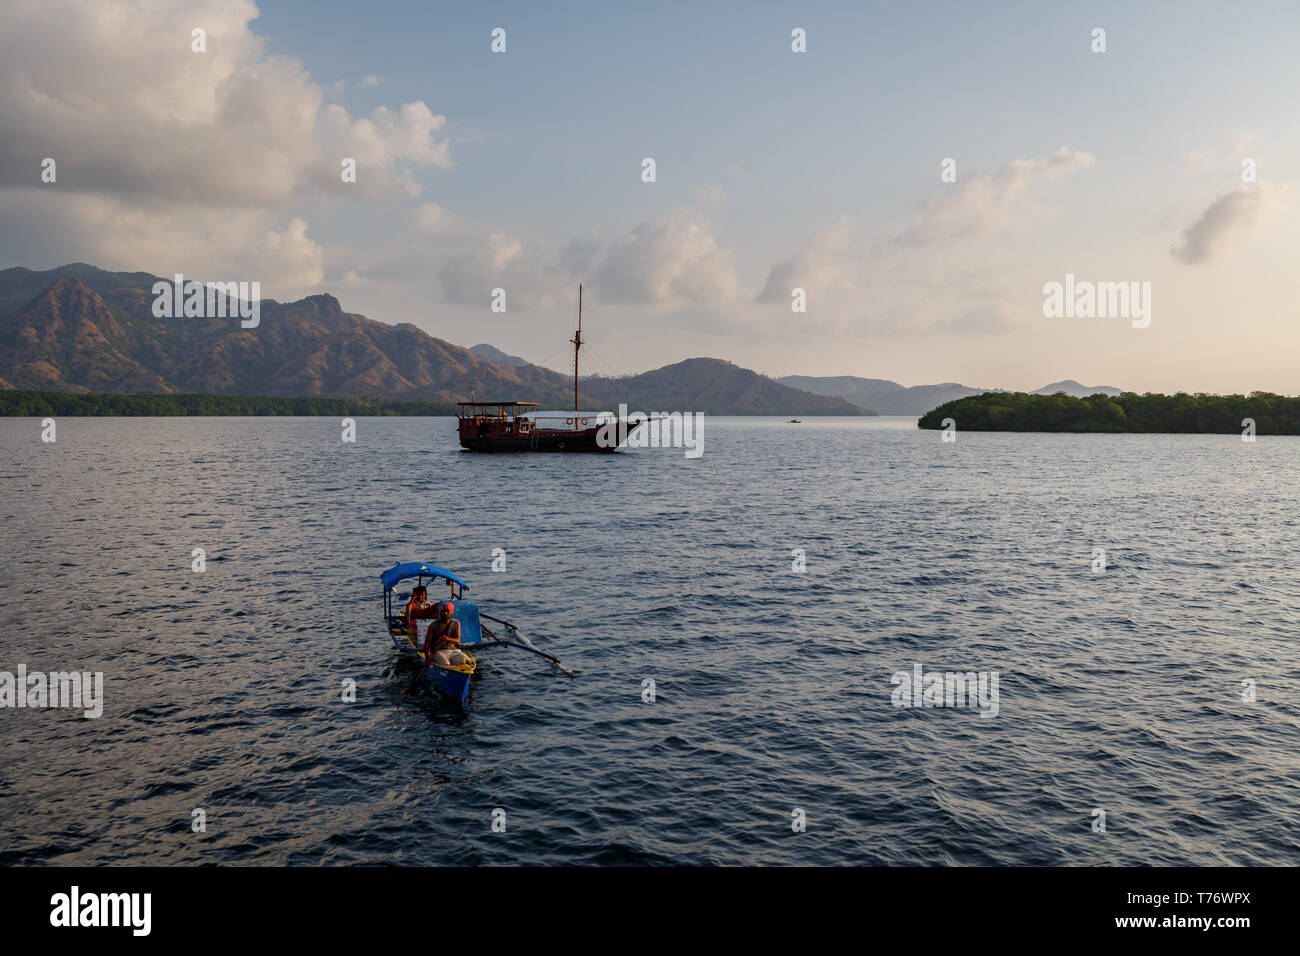 Zwei Leute, die sich für native Outrigger Kanu fahren Sie in Richtung Ufer. Traditionelles Segelschiff im Hafen Stockfoto